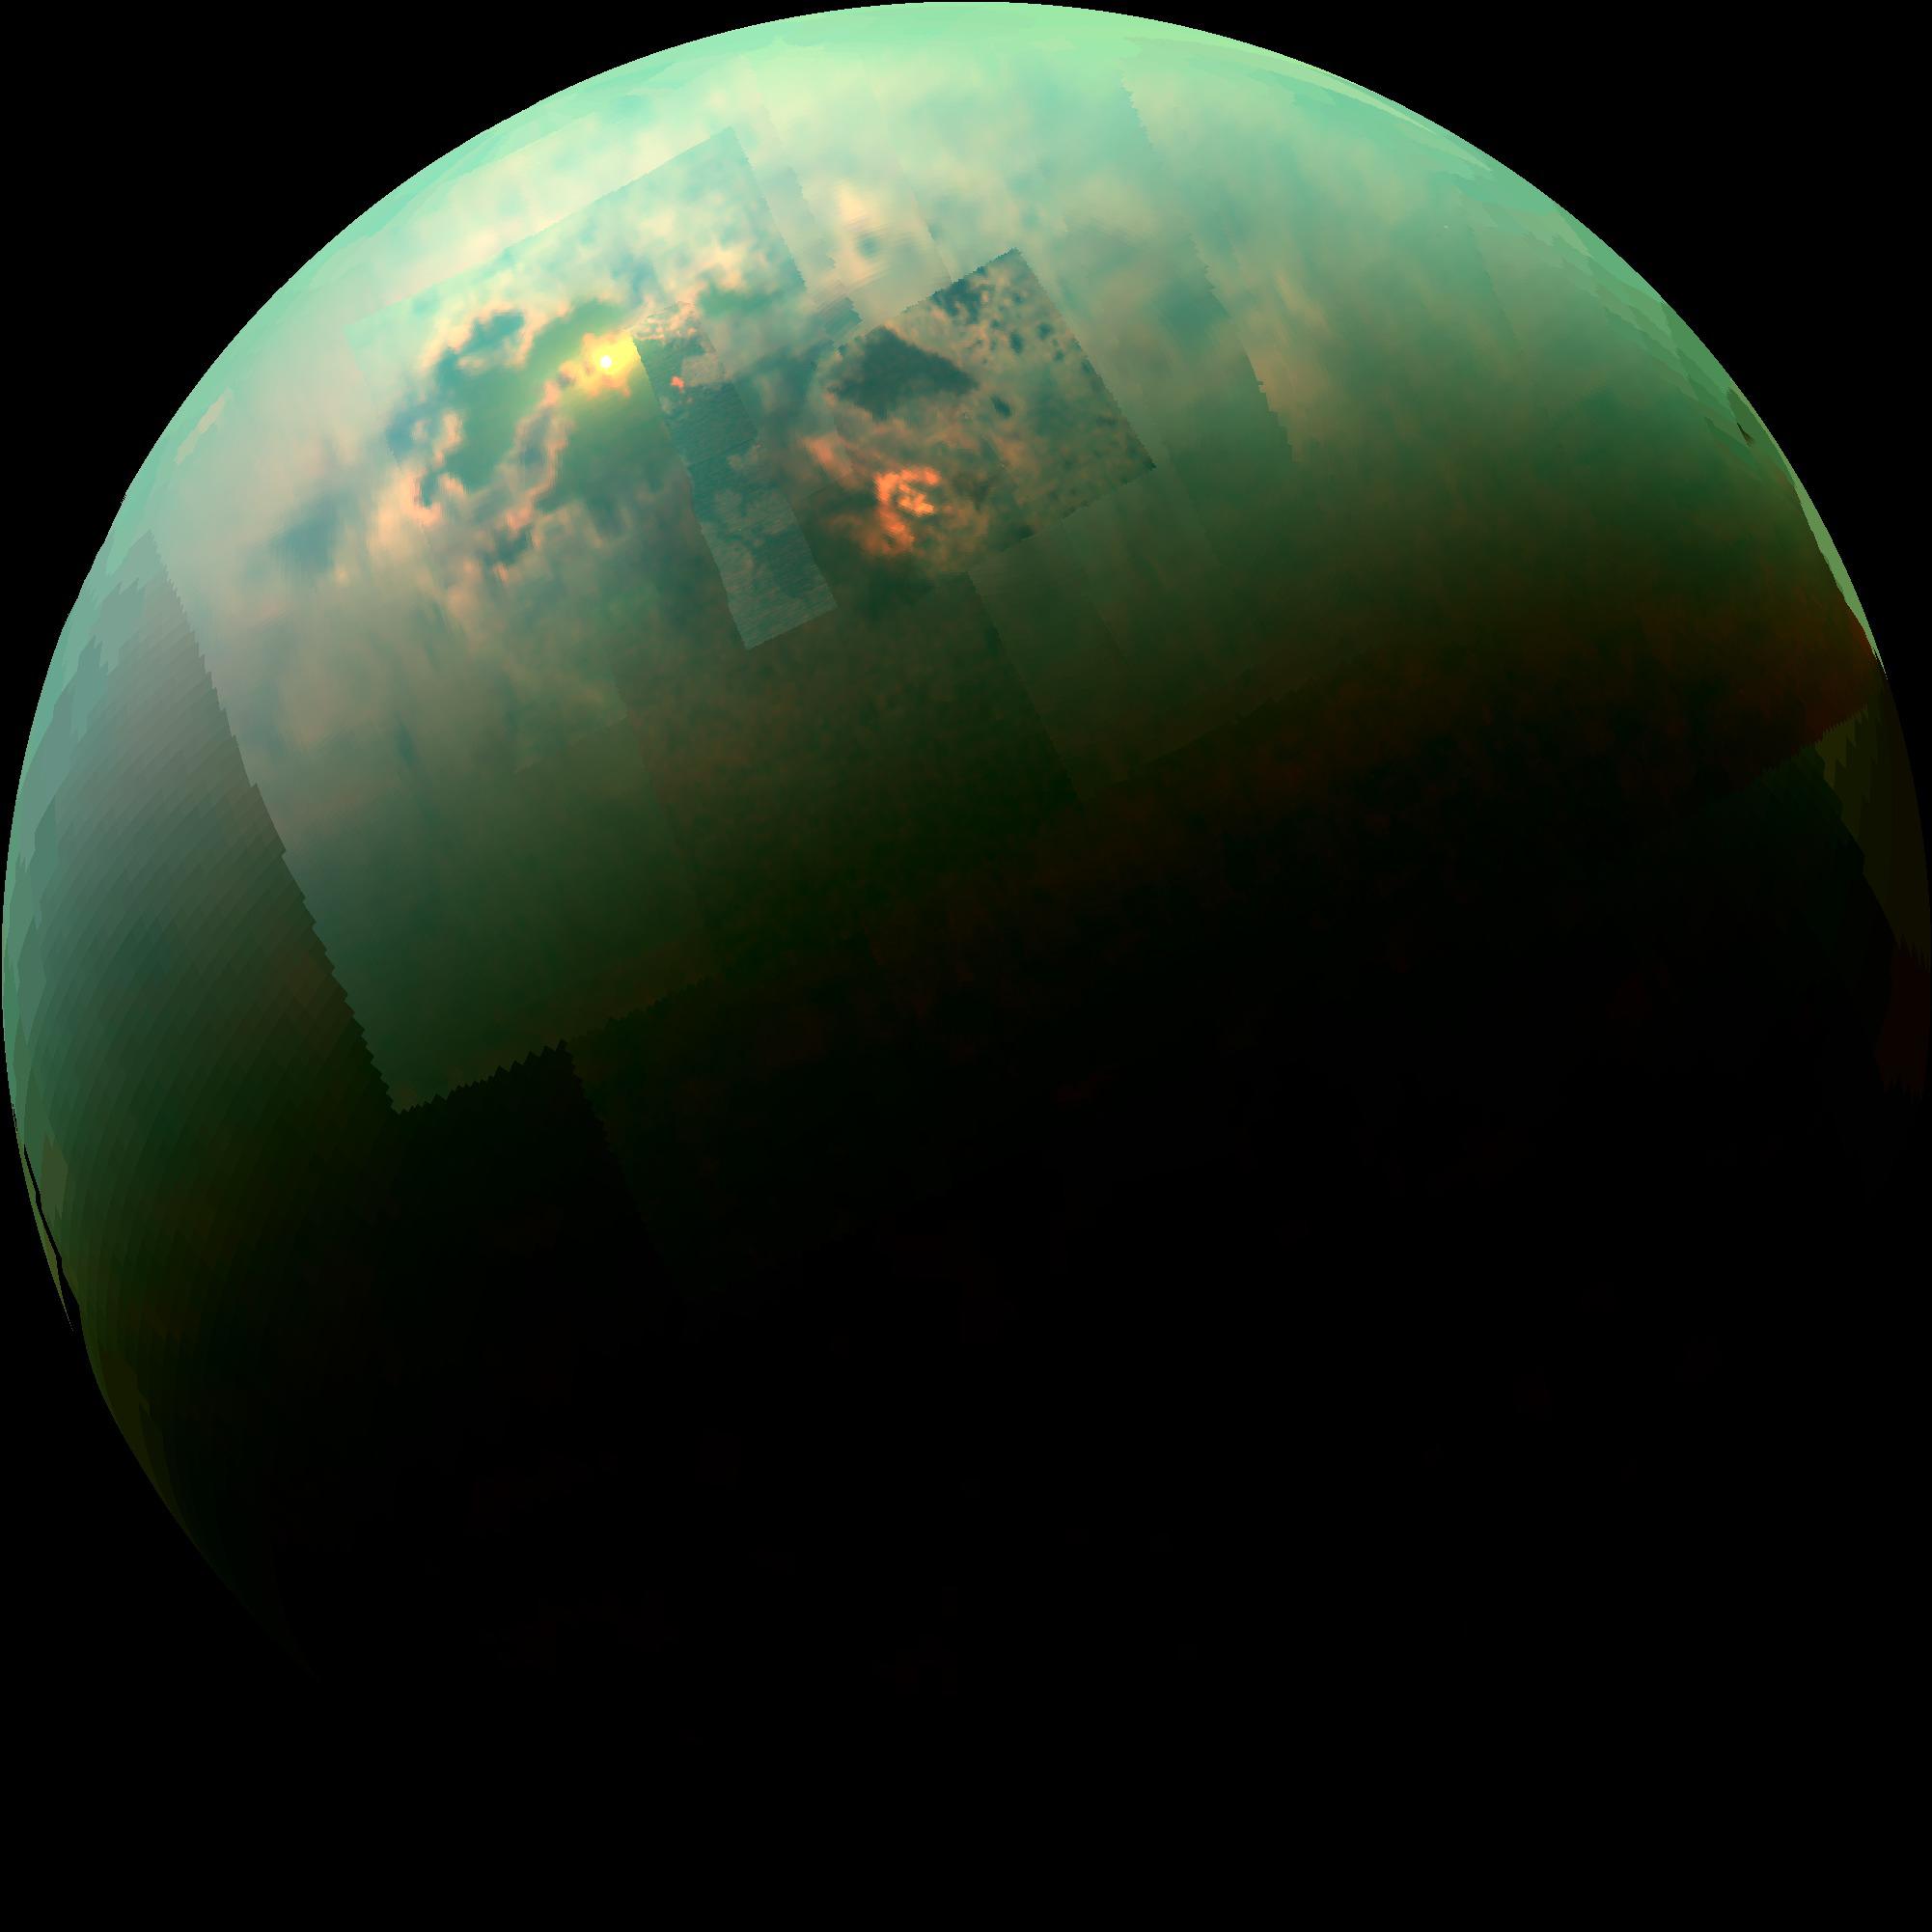 Sur Titan, le&nbsp;reflet du Soleil sur la surface d’hydrocarbures de Kraken Mare, photographié dans l’infrarouge avec l’instrument Vims de Cassini, le 24 août 2014. Si nous avions été présents à cet endroit, nous aurions distingué à travers l’épaisse atmosphère de cette grande lune de Saturne, le Soleil élevé à environ 40° au-dessus de l’horizon. © Nasa, Esa, JPL-Caltech, University of Arizona, University of Idaho